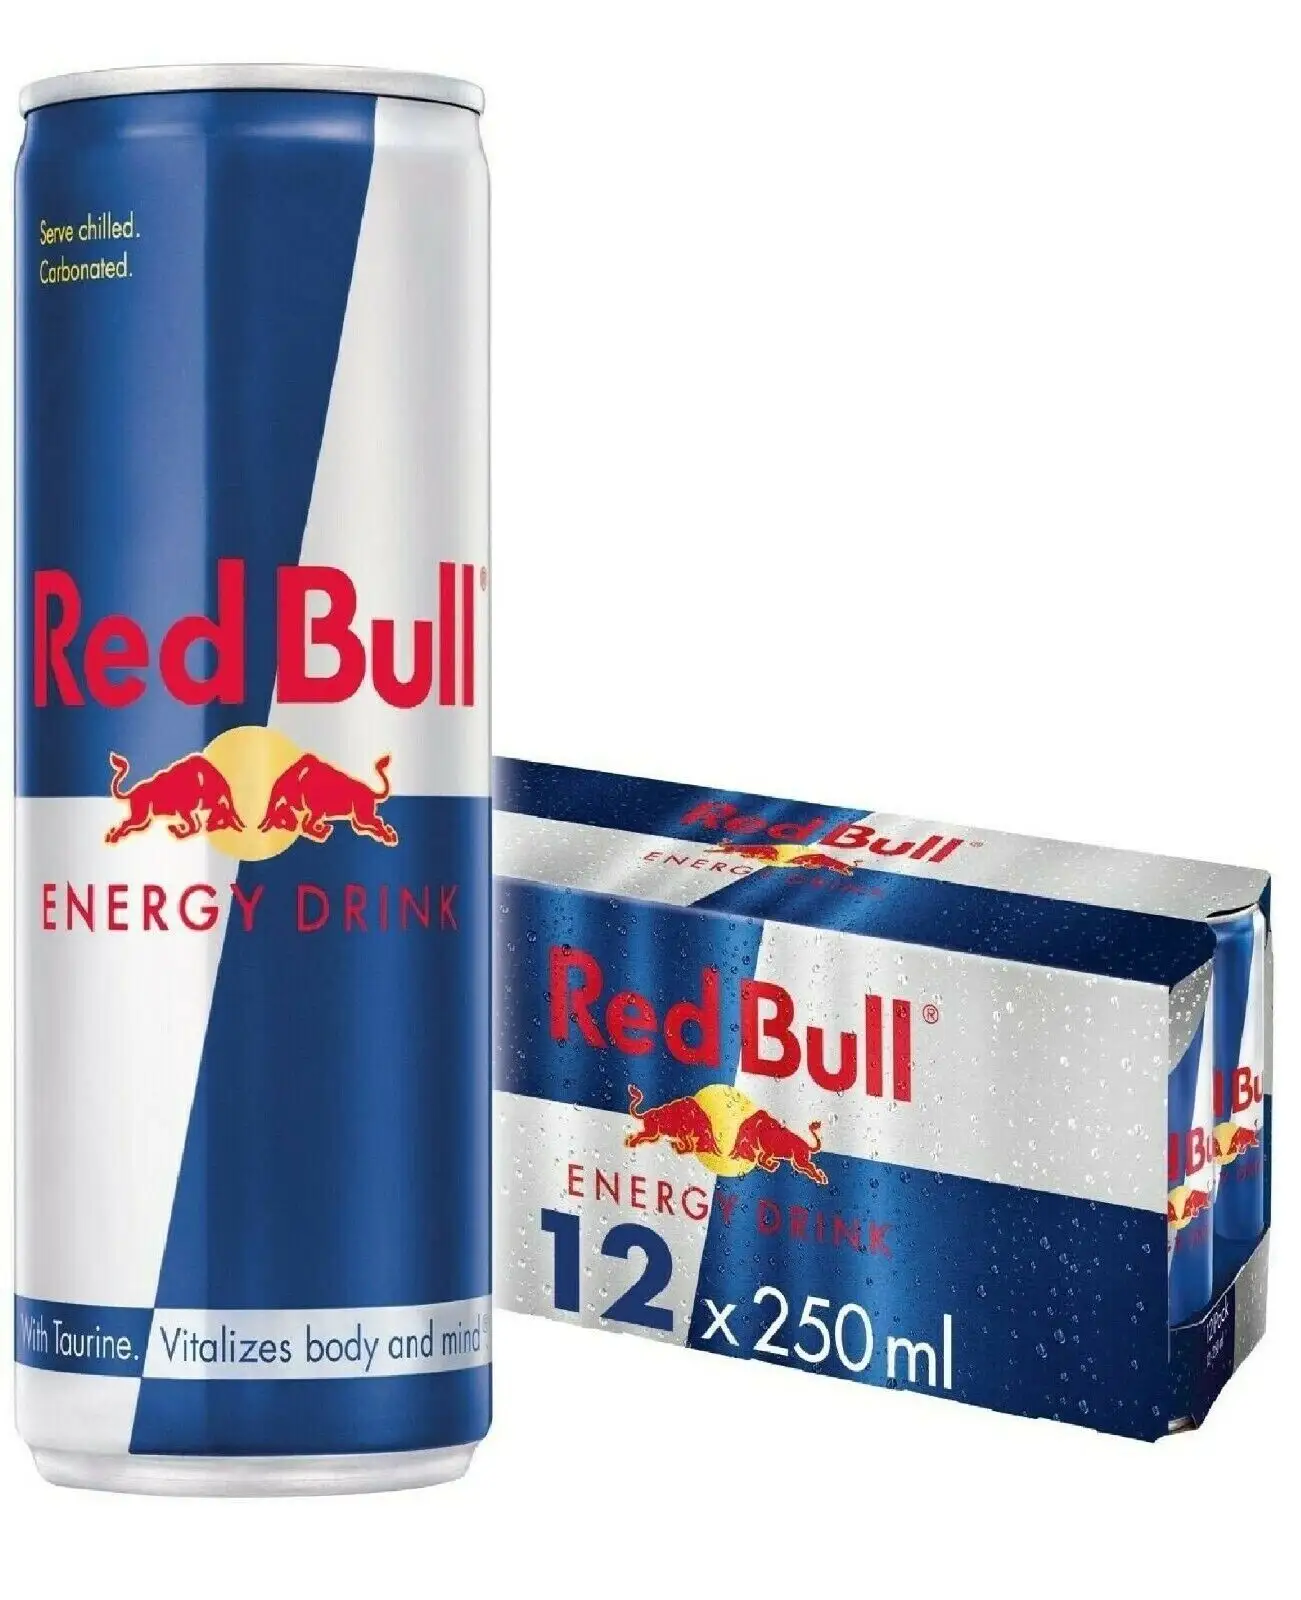 Oferta de desconto Original RedBull 250ml Energy Drink Redbull - Energy Drink Red Bull Energy Drink 250ml Pronto para Exportação